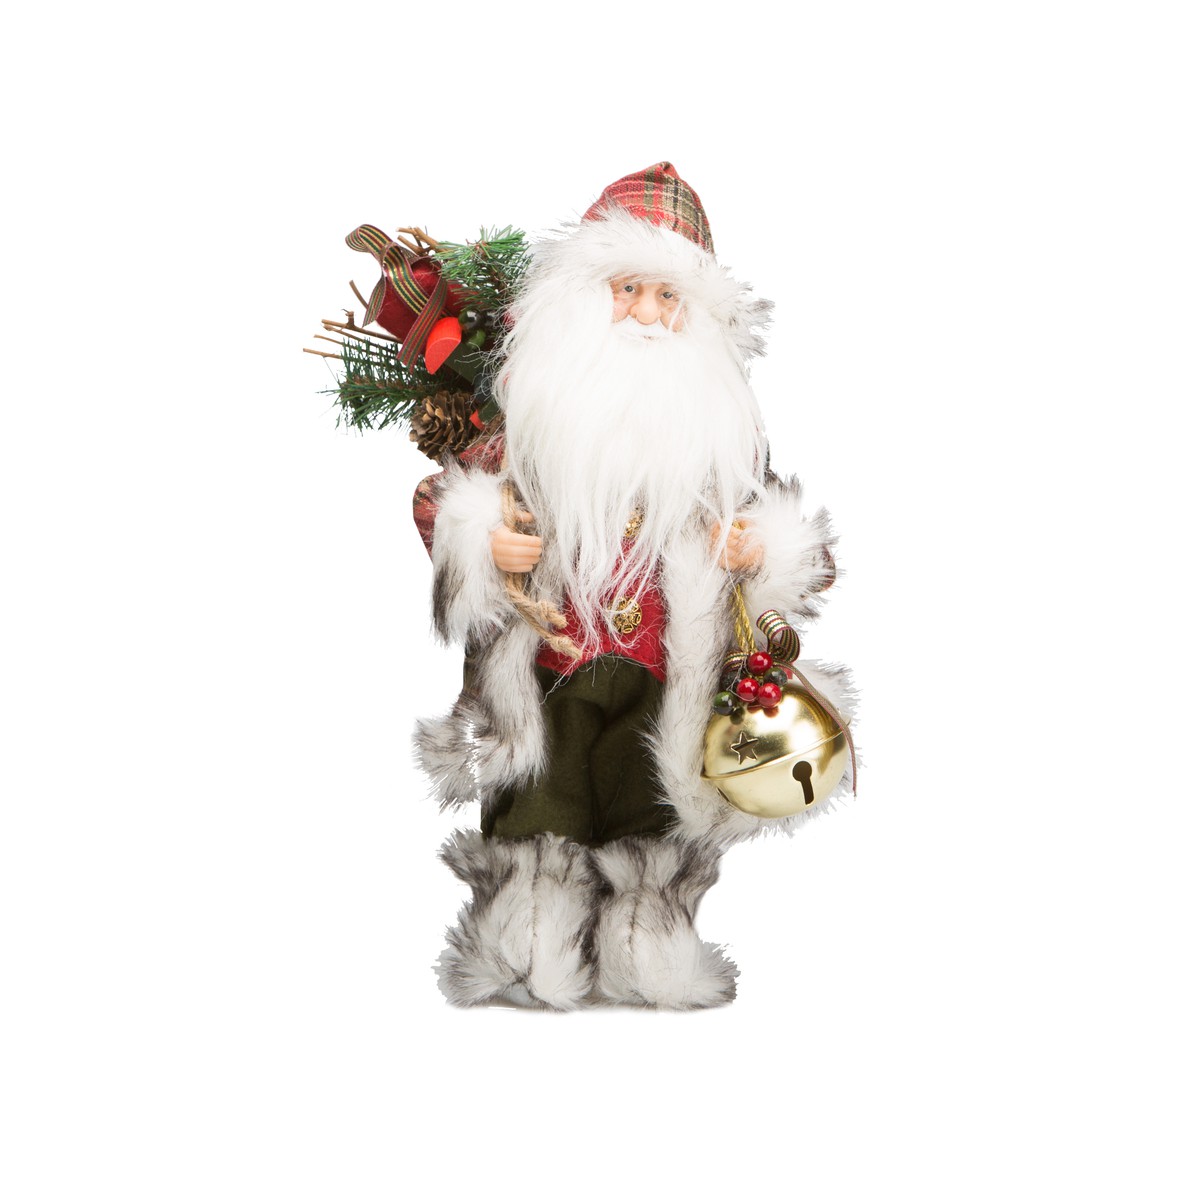   Père Noël Carreaux rouge & vert avec grelot  30cm